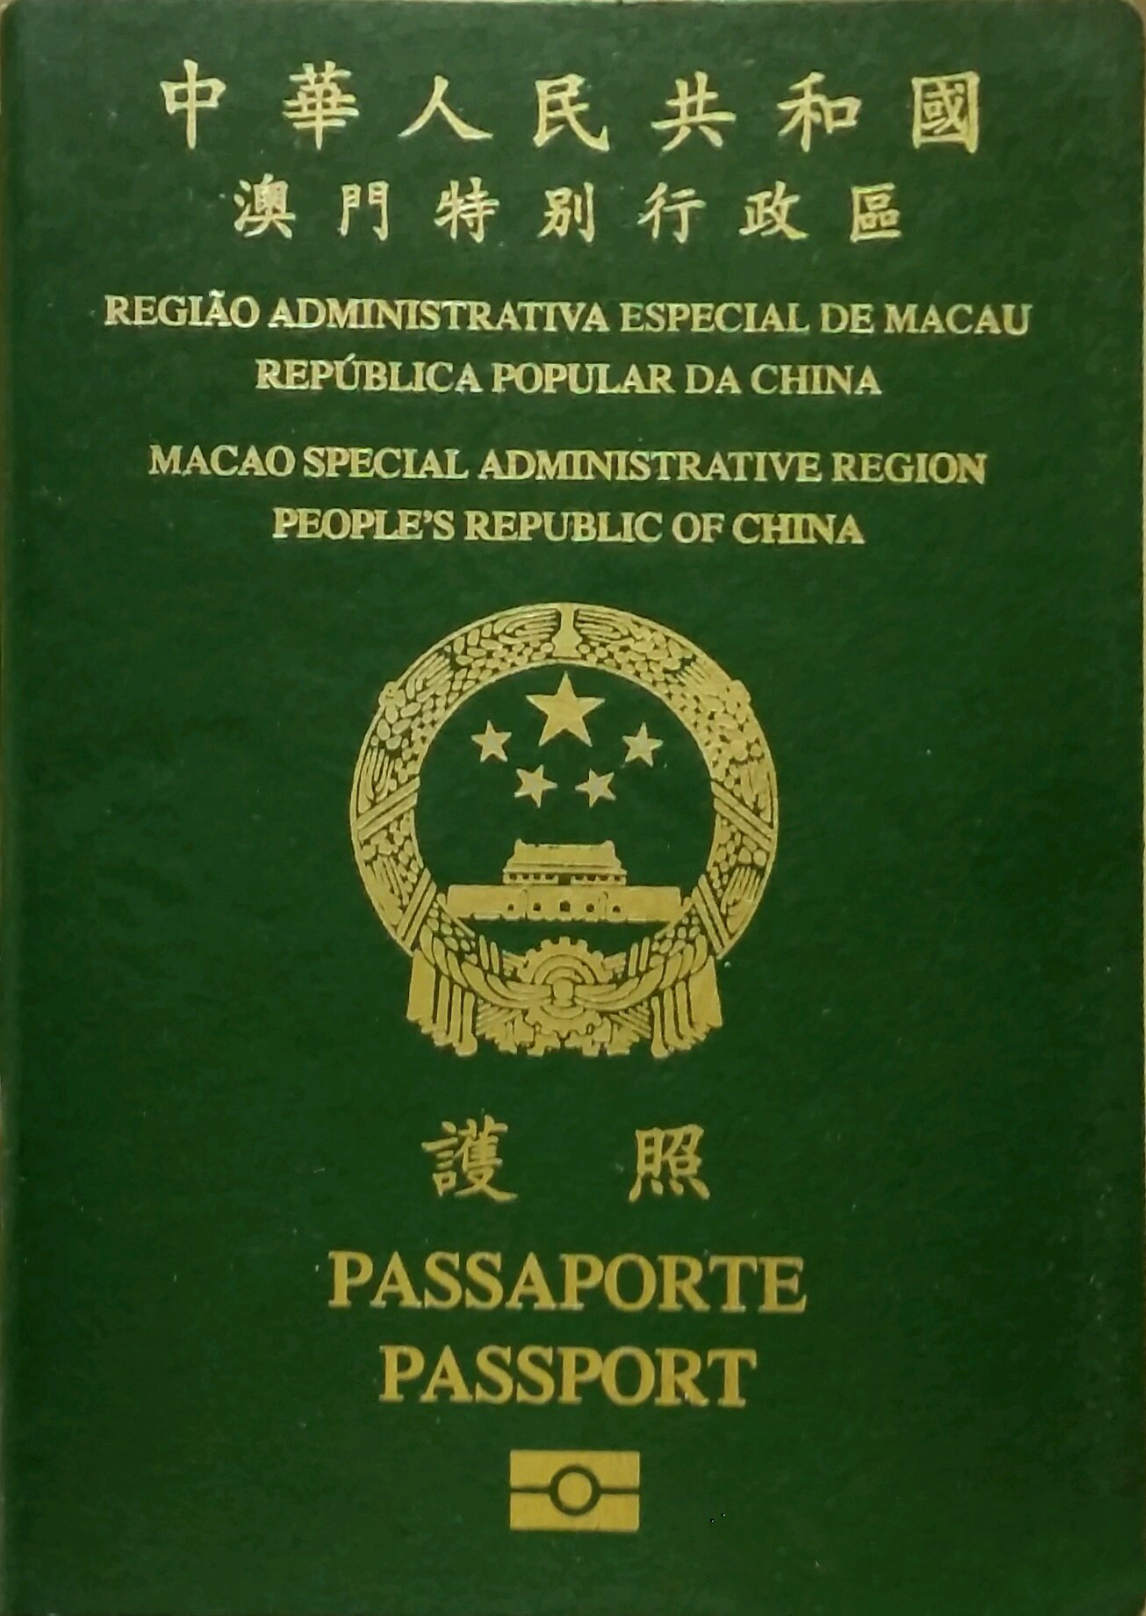 臨時護照澳門 - 護照號碼查詢系統